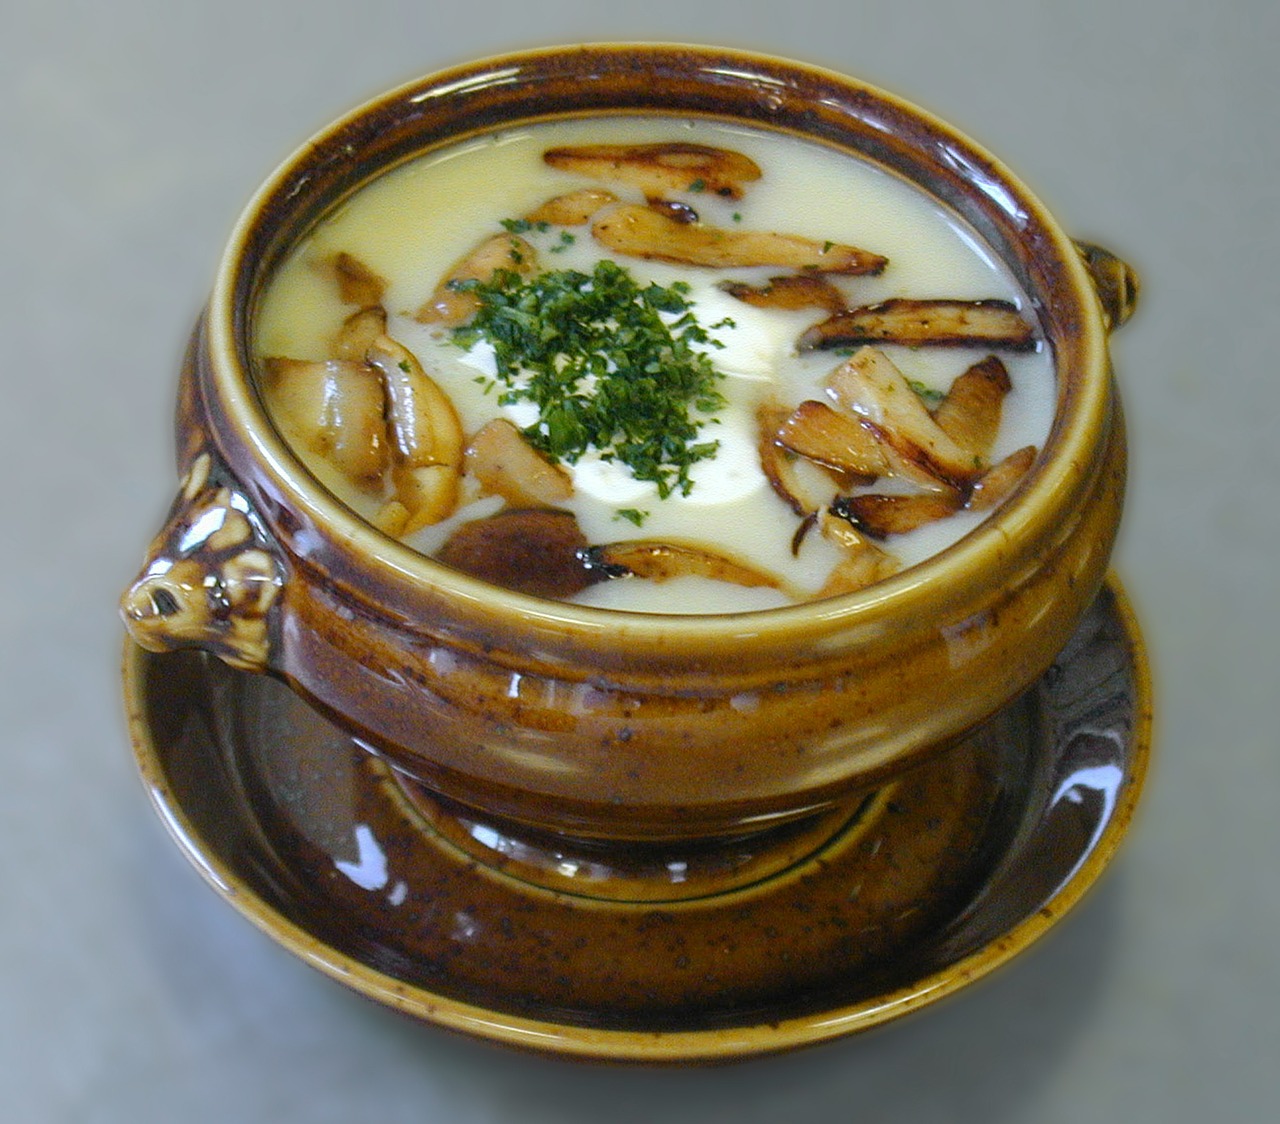 Croatian Sour Soup